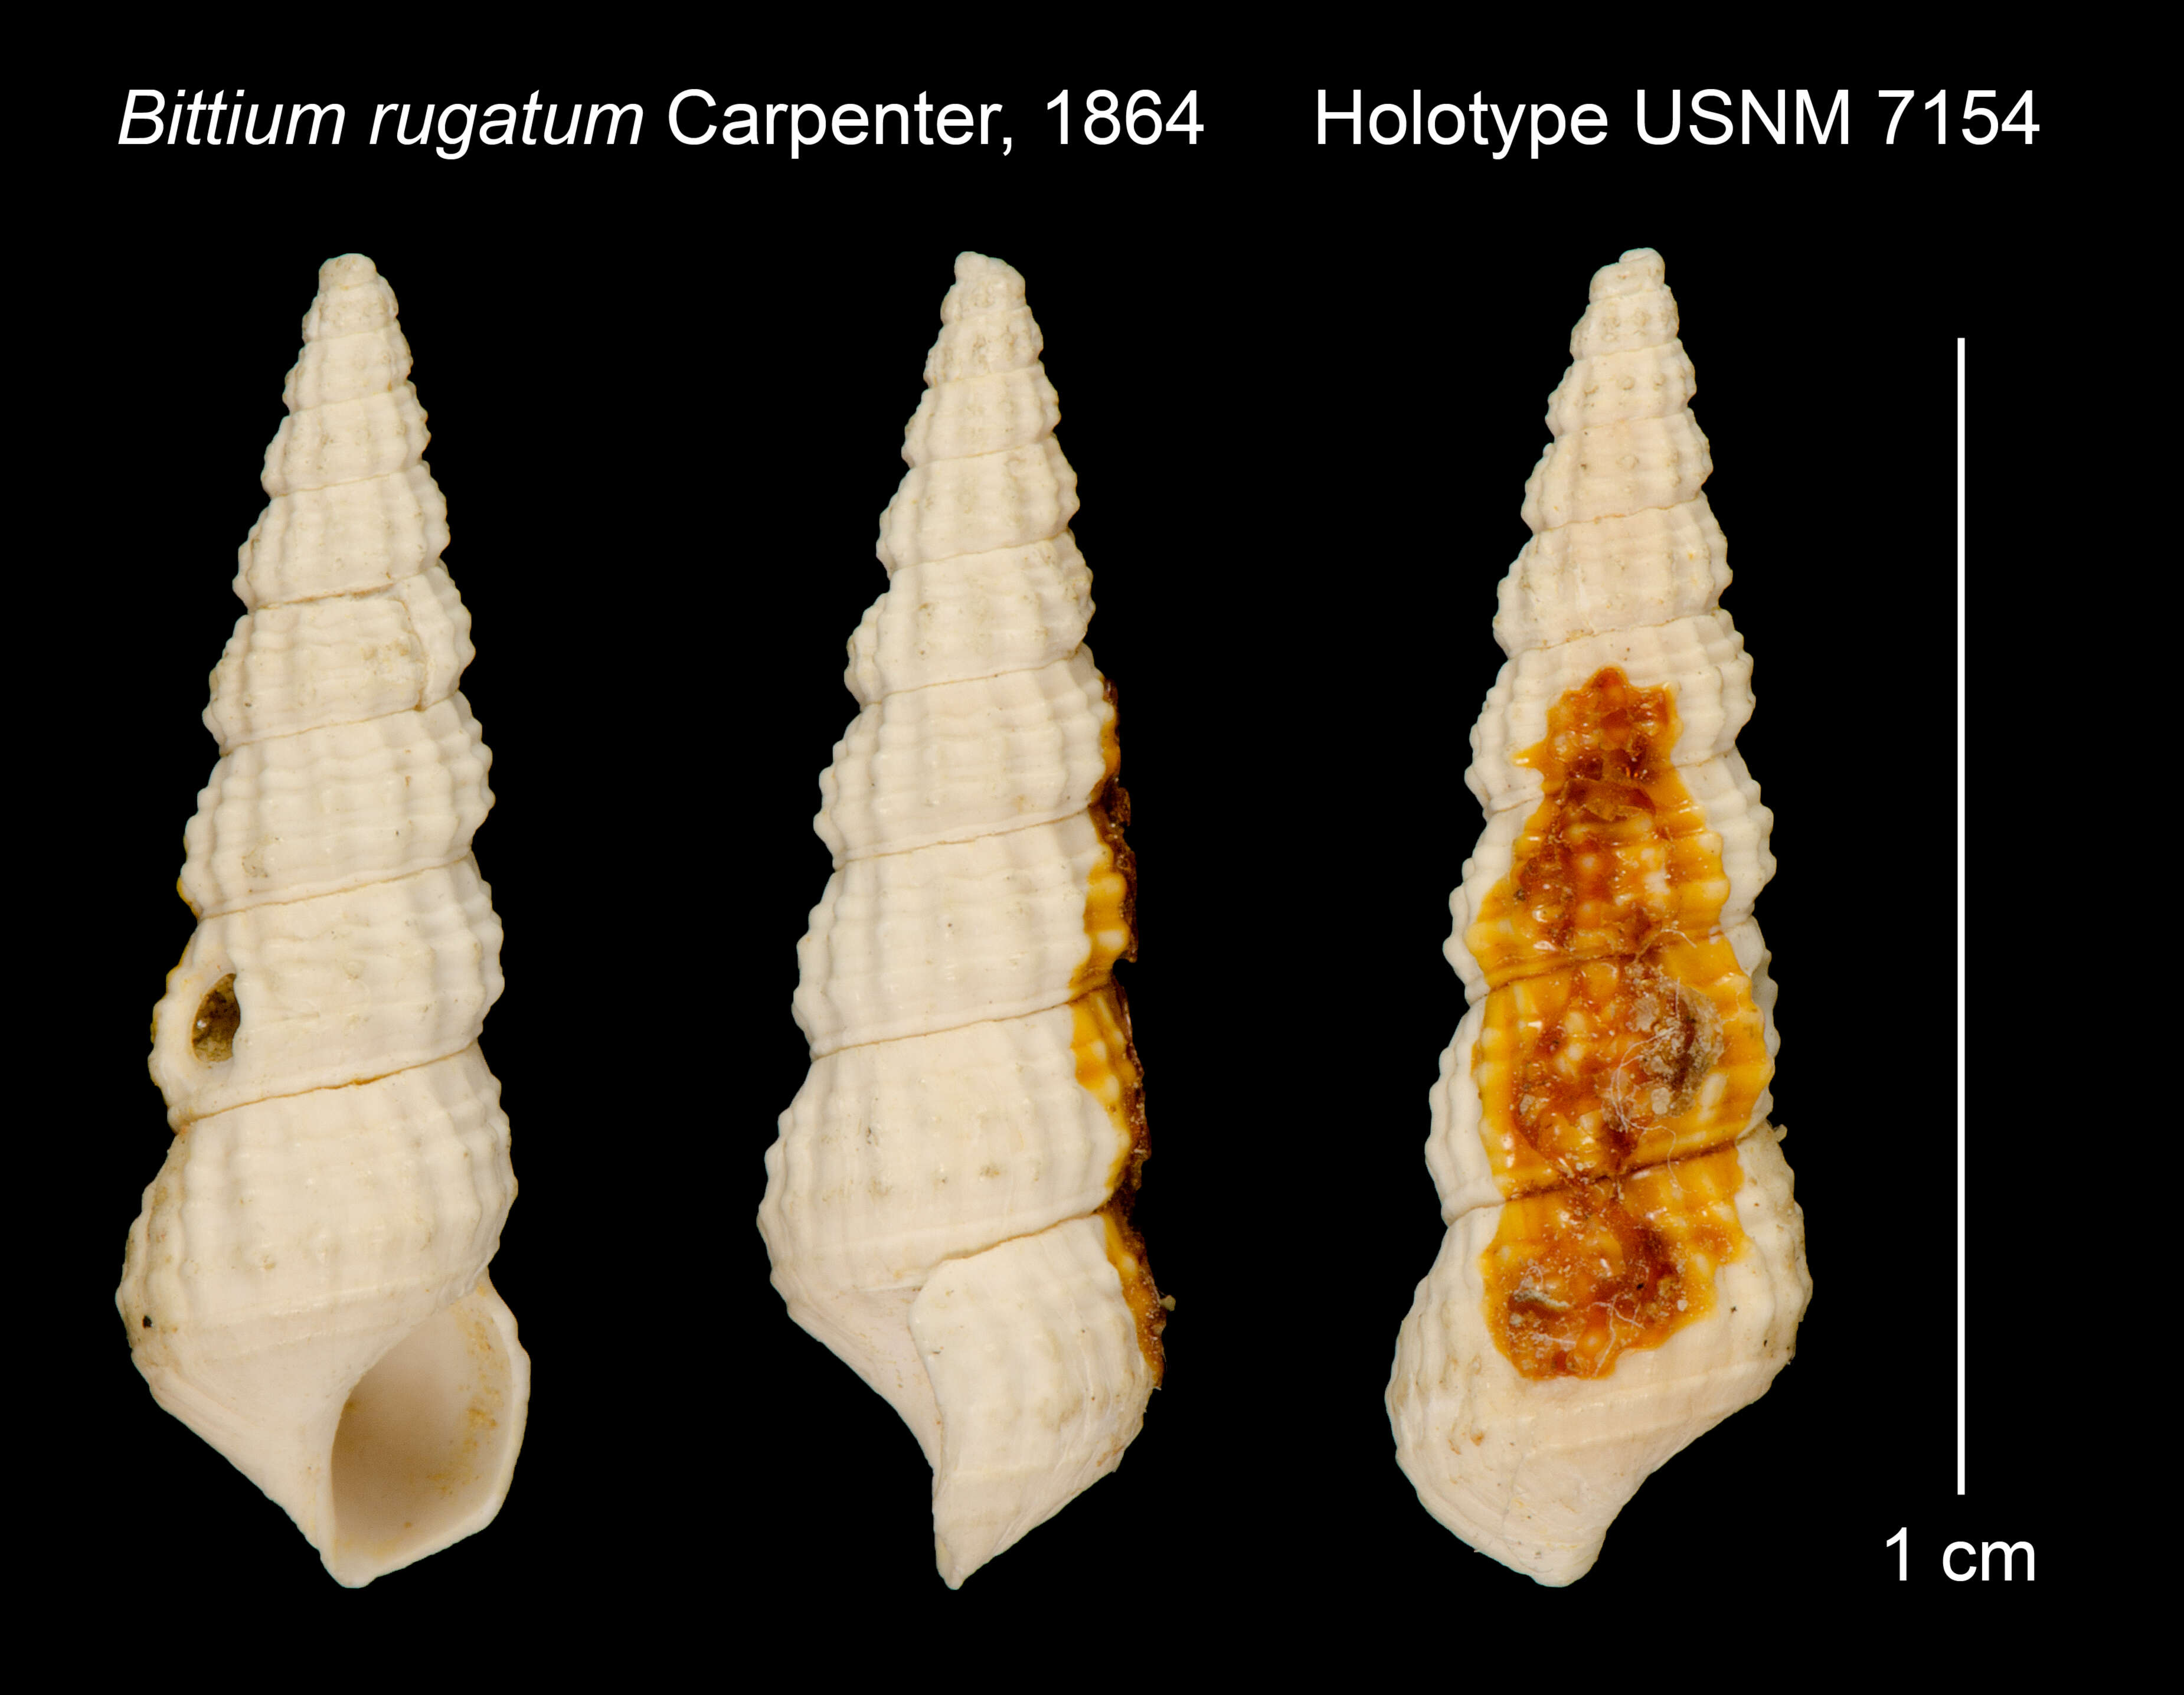 Image of Bittium rugatum Carpenter 1864